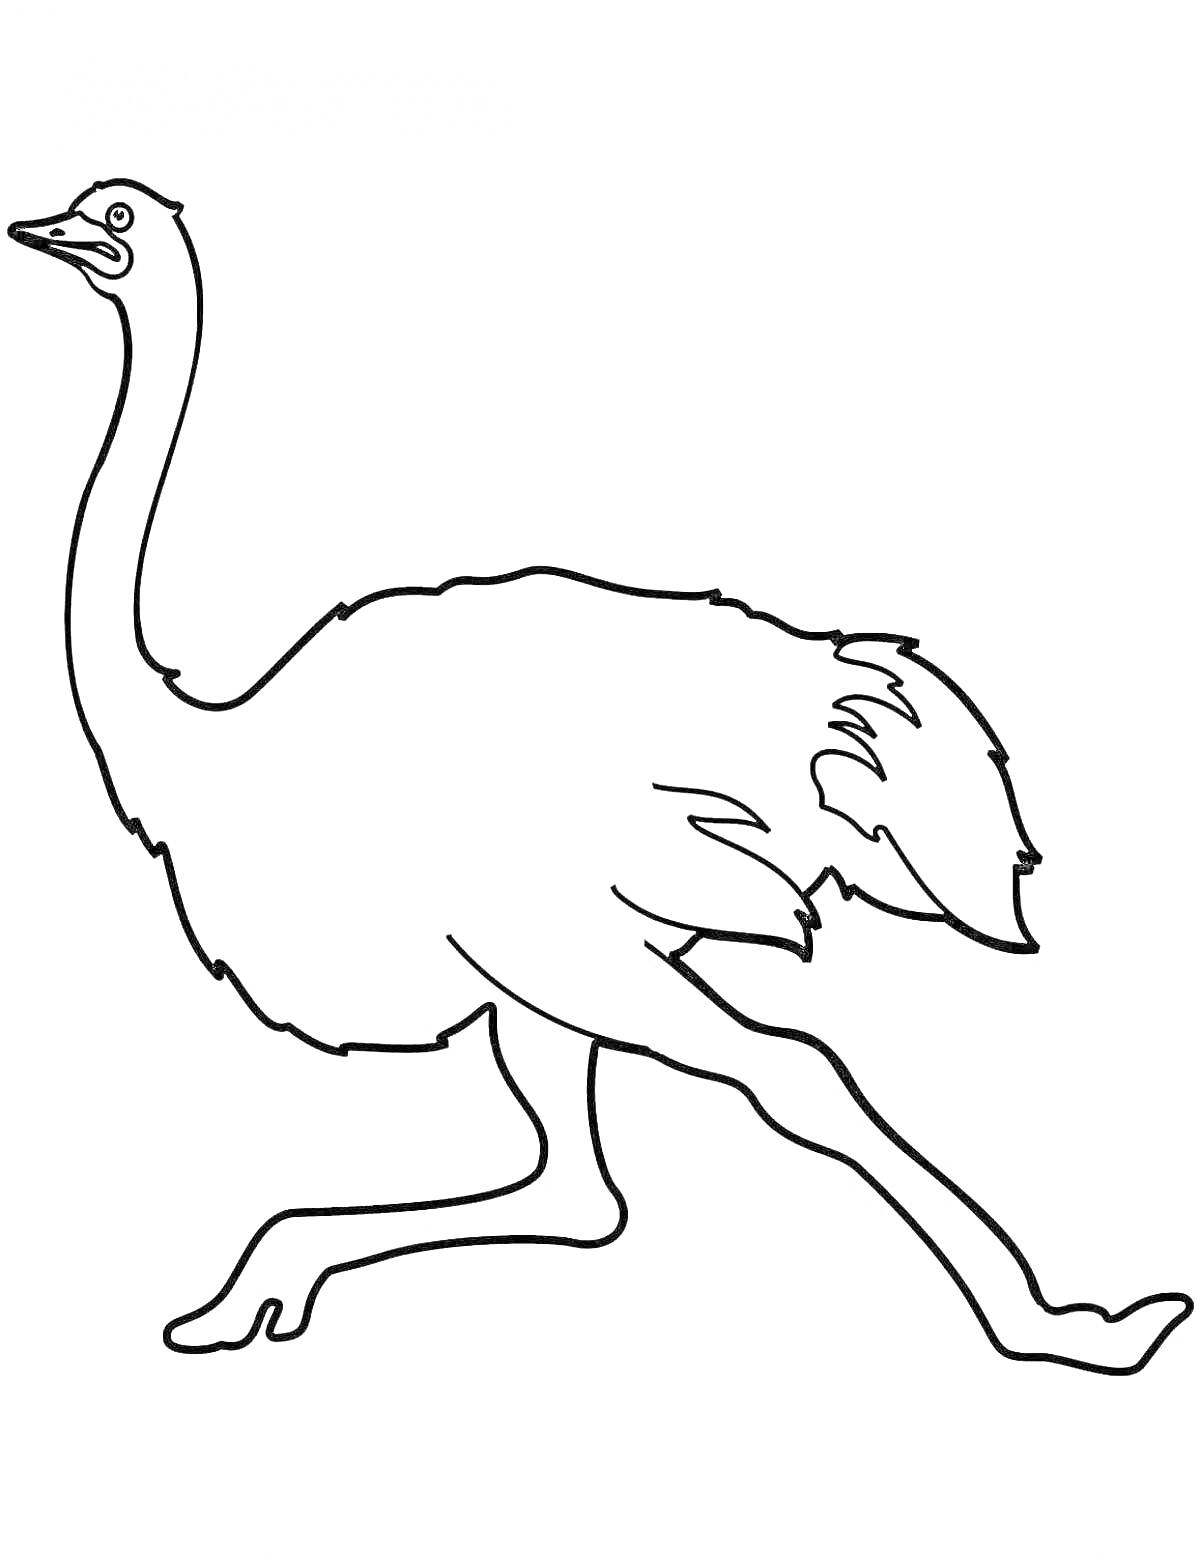 Раскраска Эму страус с длинной шеей и лапами